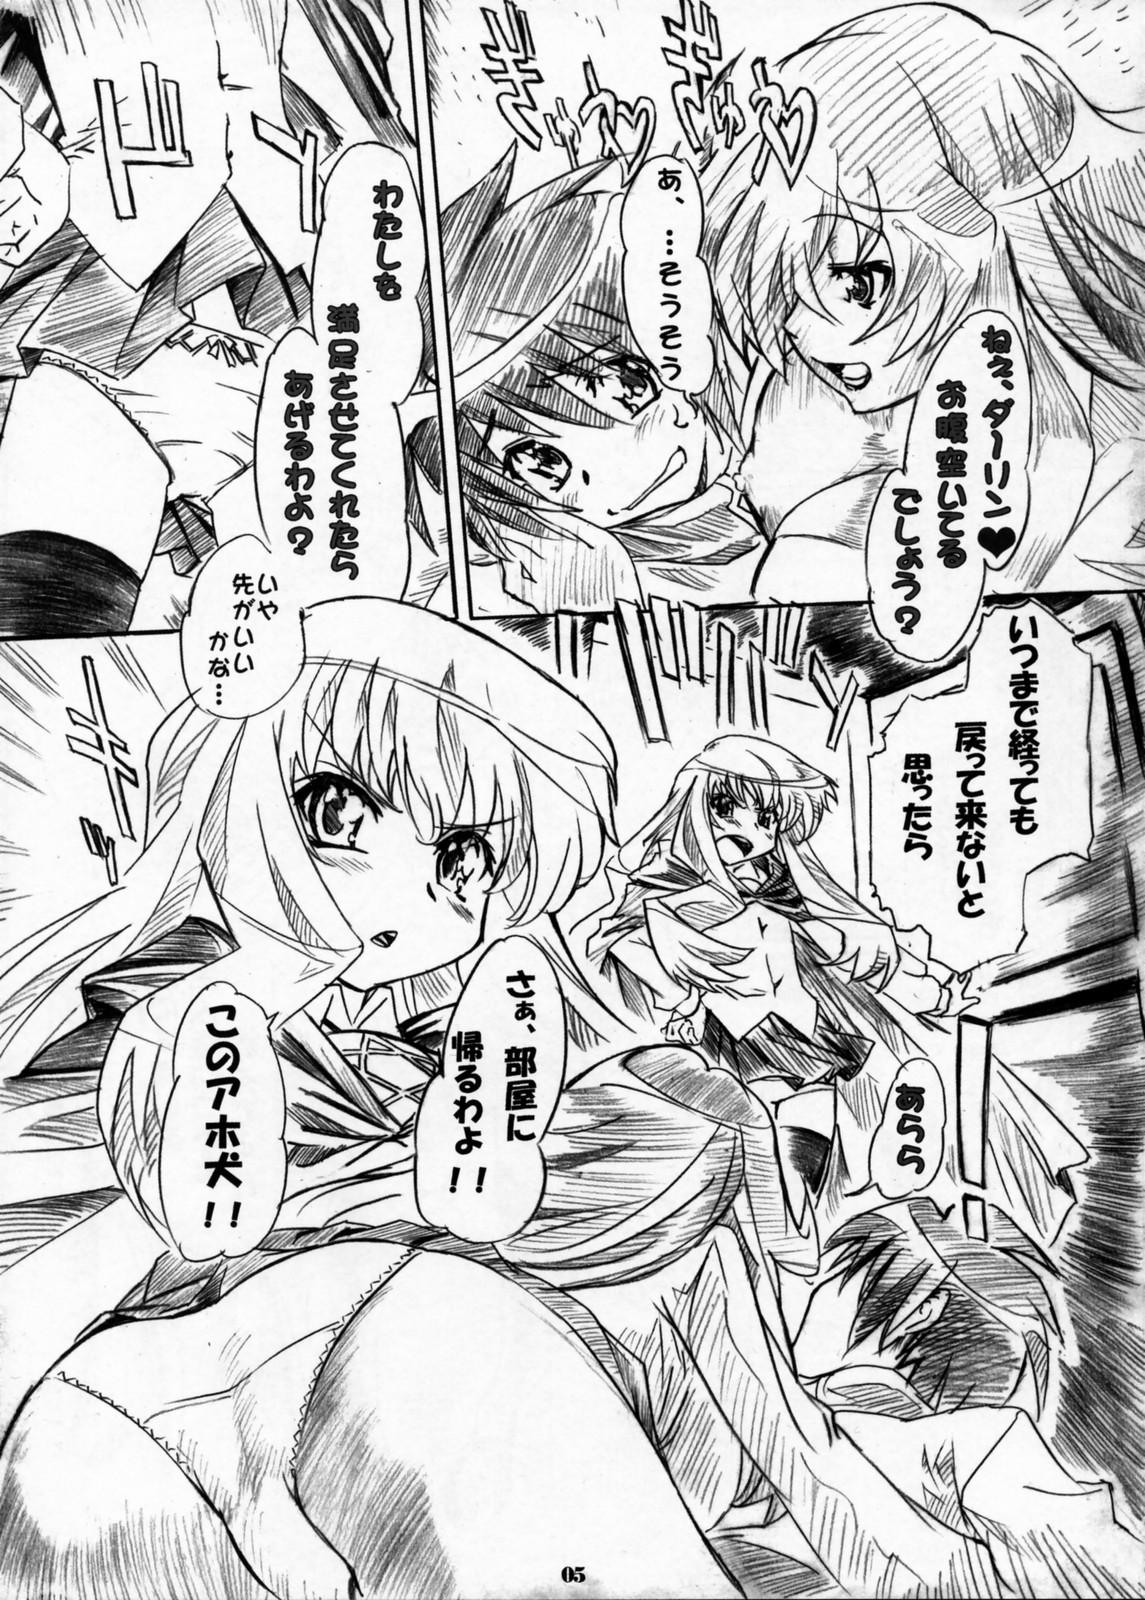 Assfuck Kizoku Gokuraku - Zero no tsukaima Ghetto - Page 4